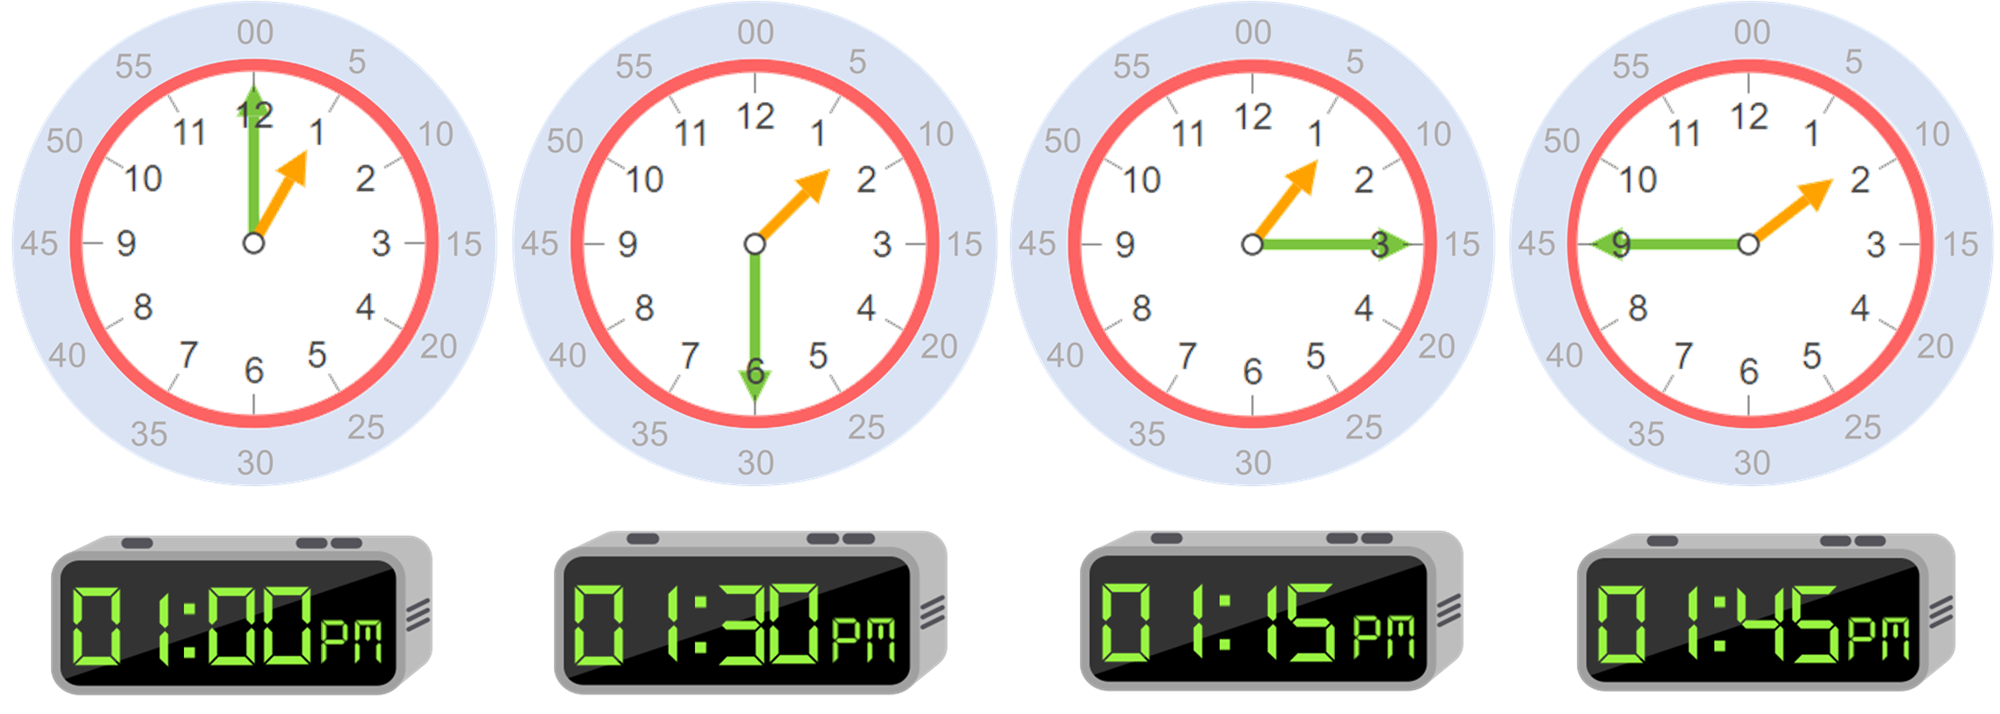 precoz Fructífero Bigote Horas: conceptos básicos para aprender a leer la hora en un reloj - Smartick